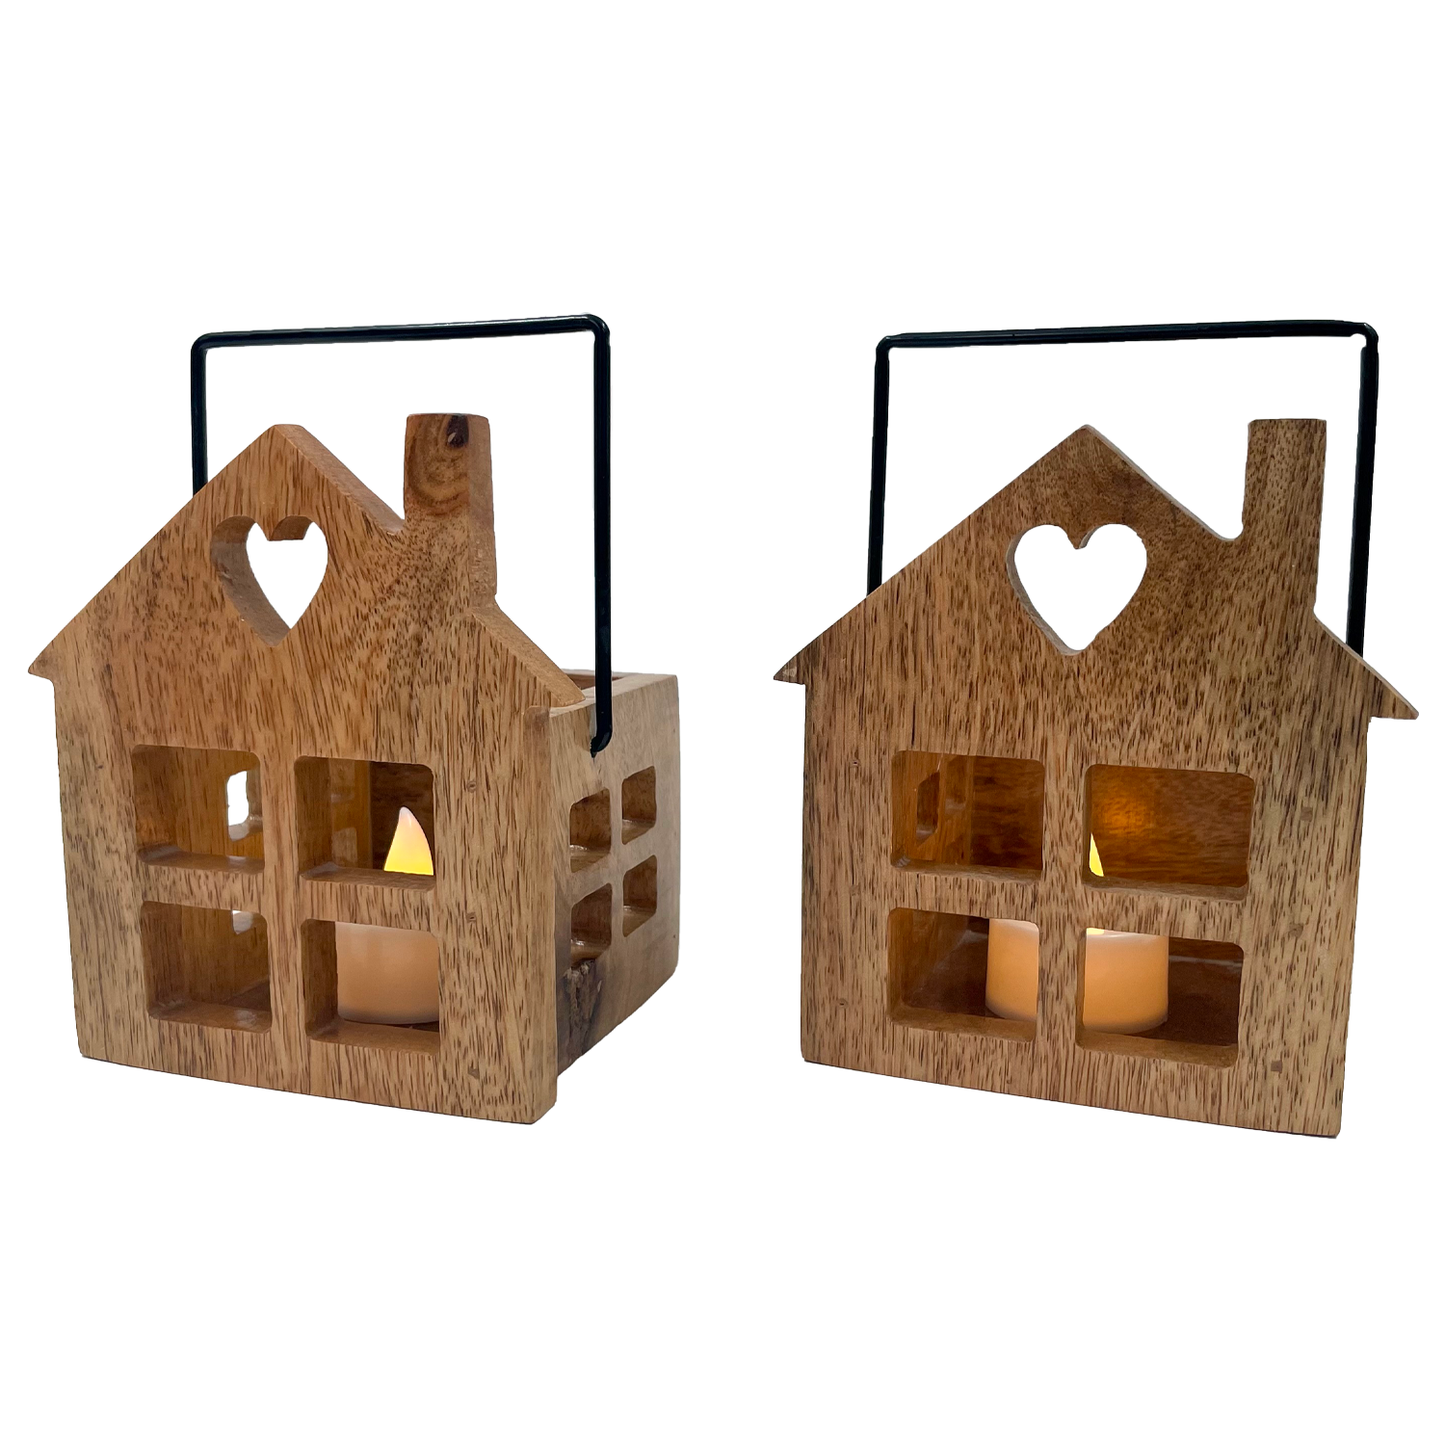 Wooden House T Light Holders / Lanterns- Set of 2